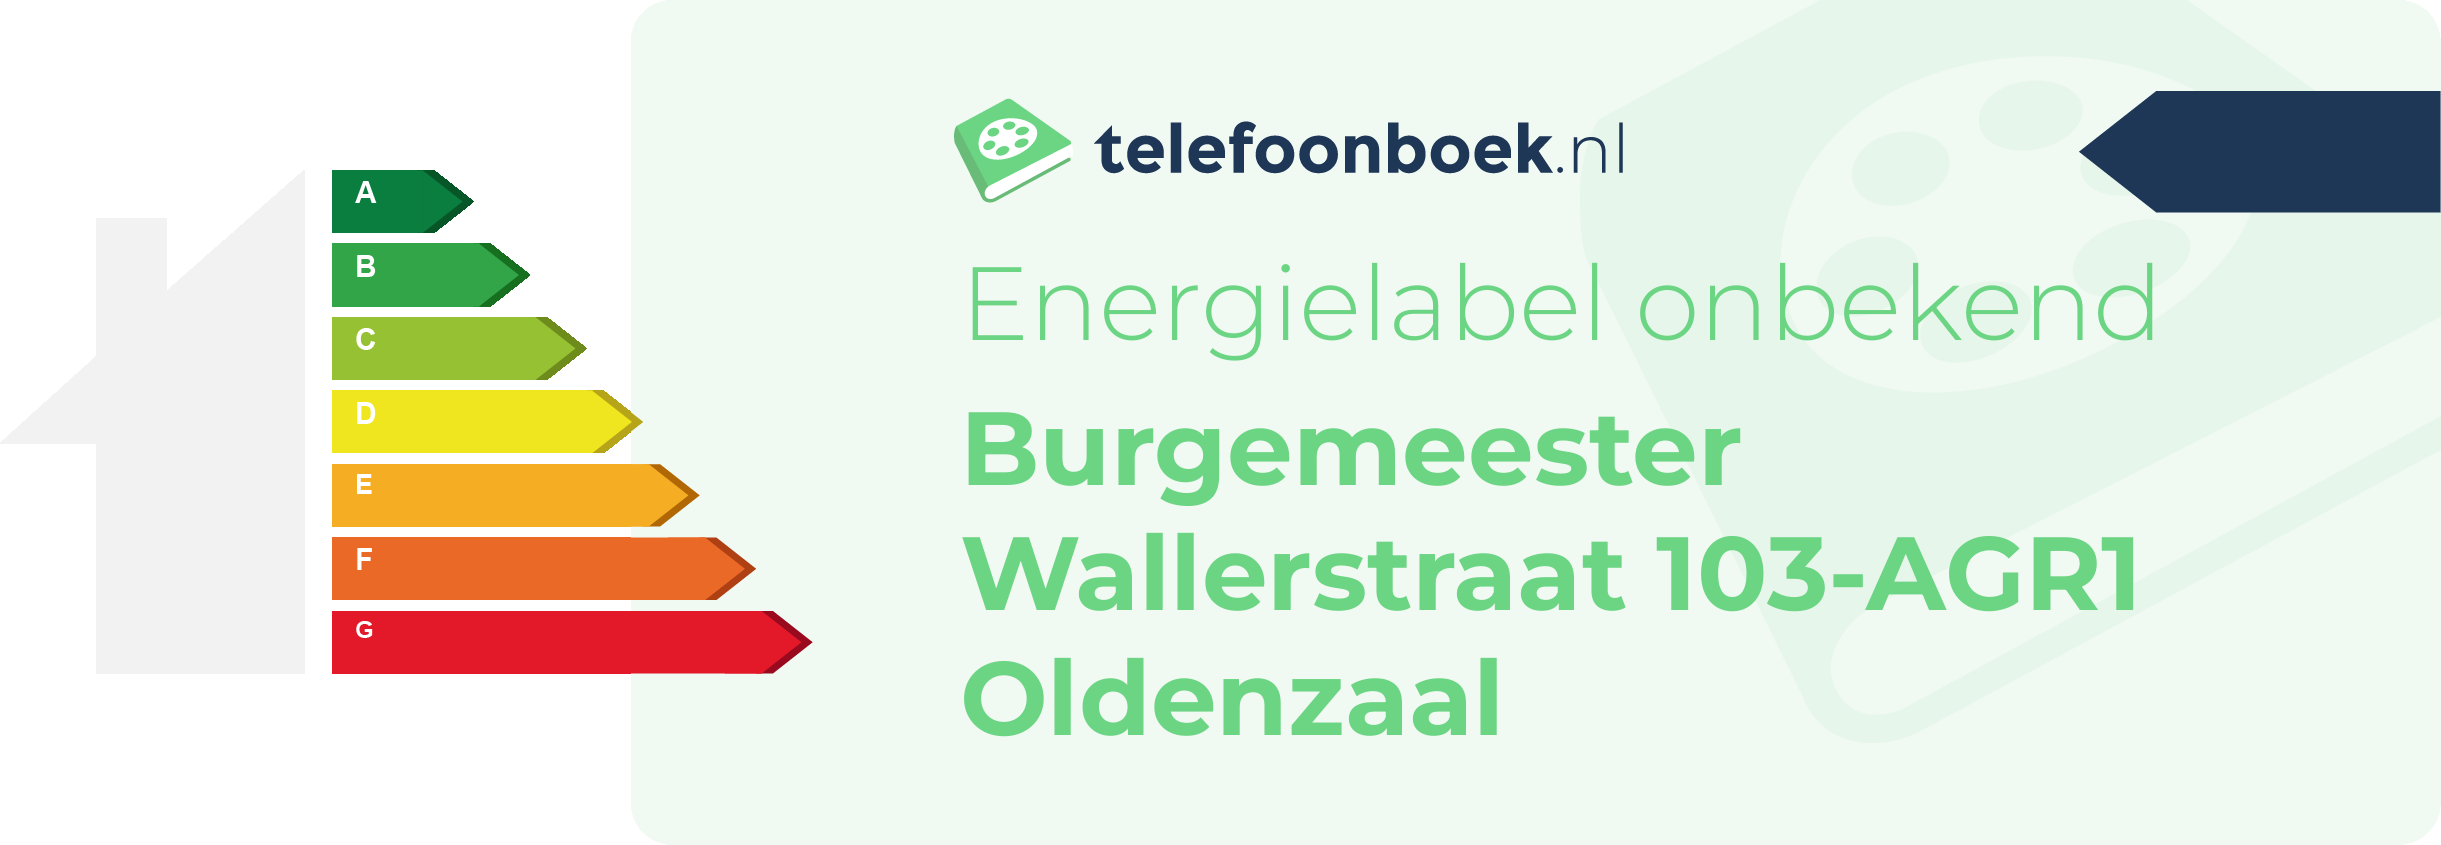 Energielabel Burgemeester Wallerstraat 103-AGR1 Oldenzaal